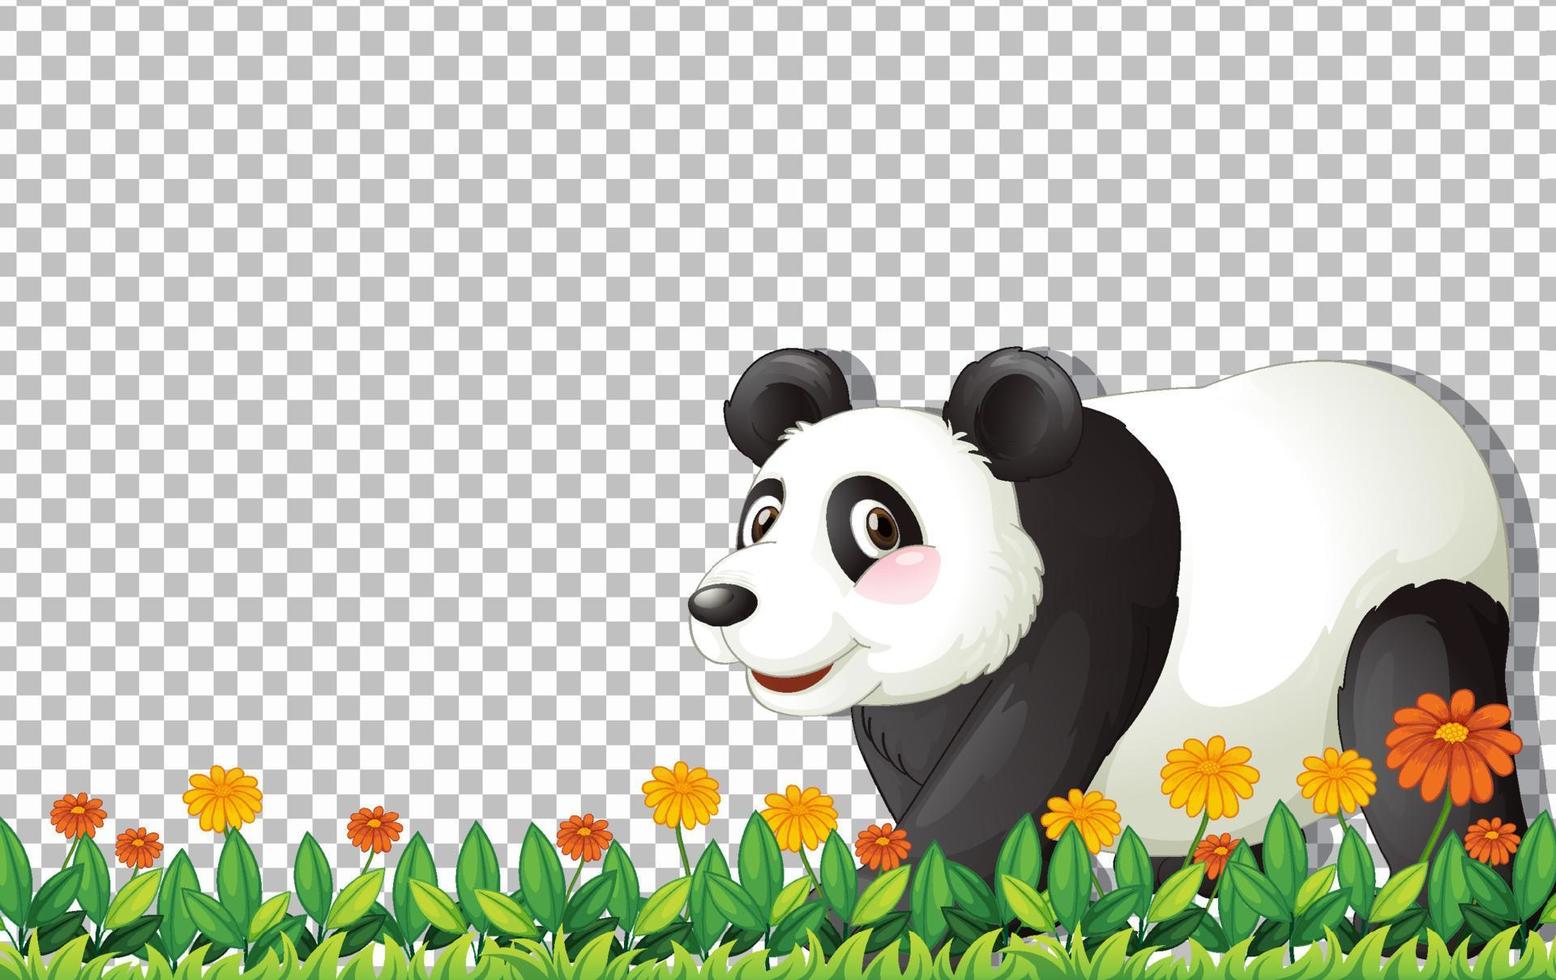 panda björn gå på grönt gräs på rutnät bakgrund vektor